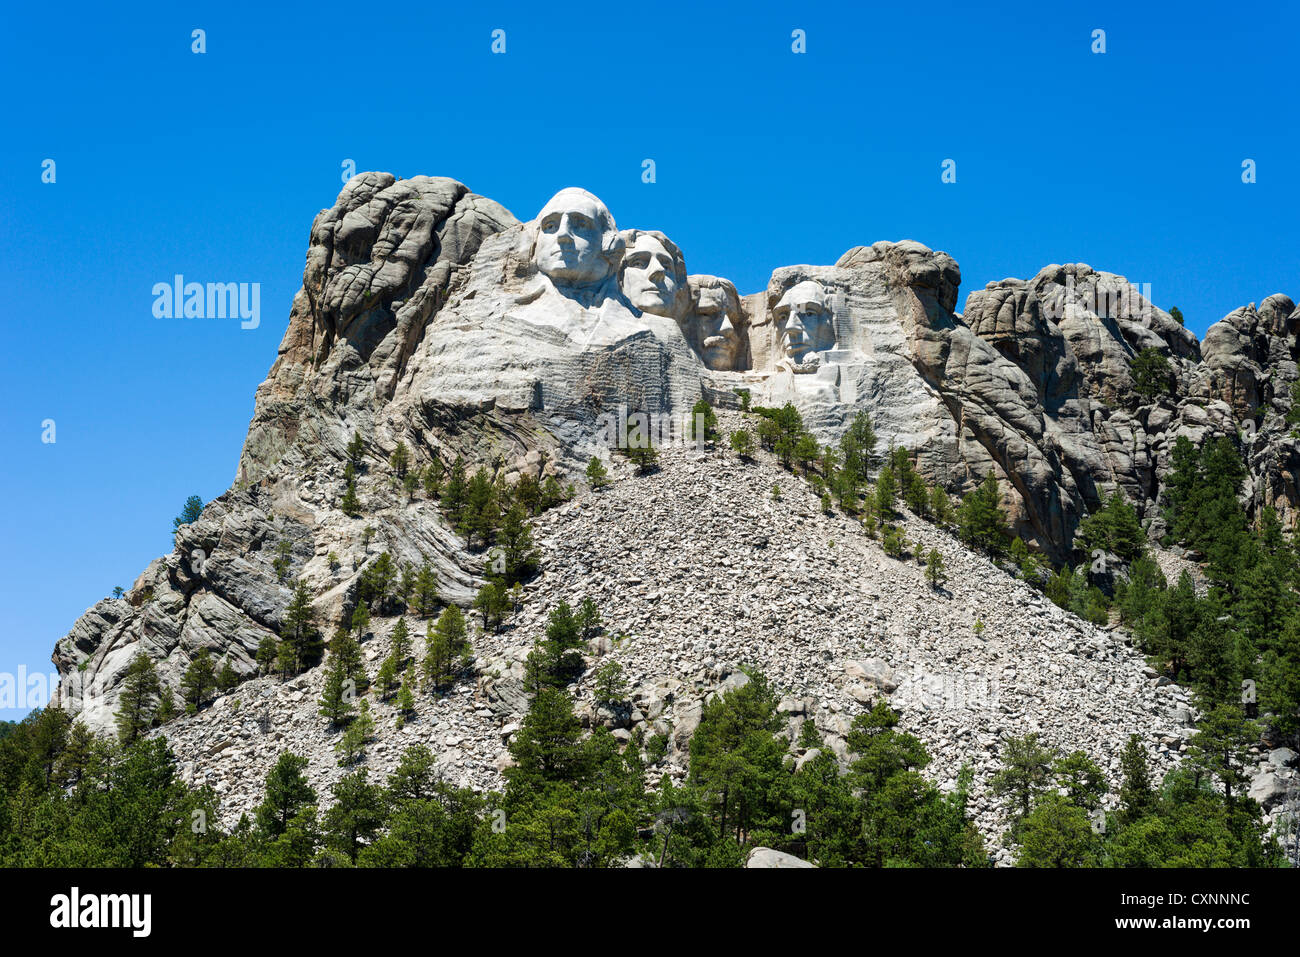 Les visages des quatre présidents à Mount Rushmore National Memorial vu de Grand View Terrace, Black Hills, Dakota du Sud, USA Banque D'Images